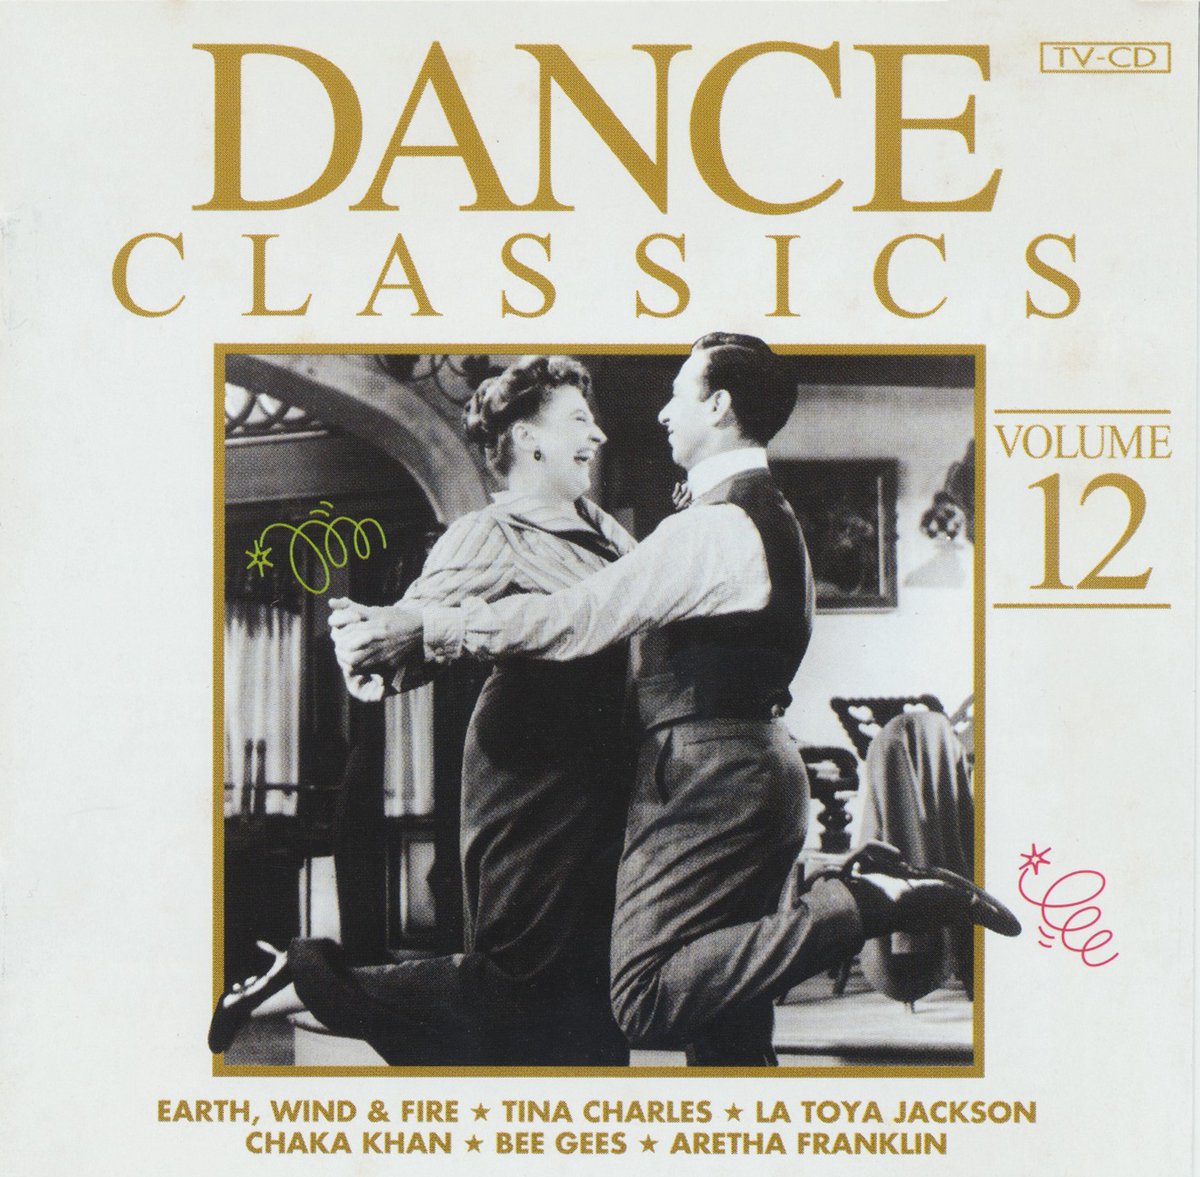 Original DANCE CLASSICS volume 12 ARCADE - The Quick